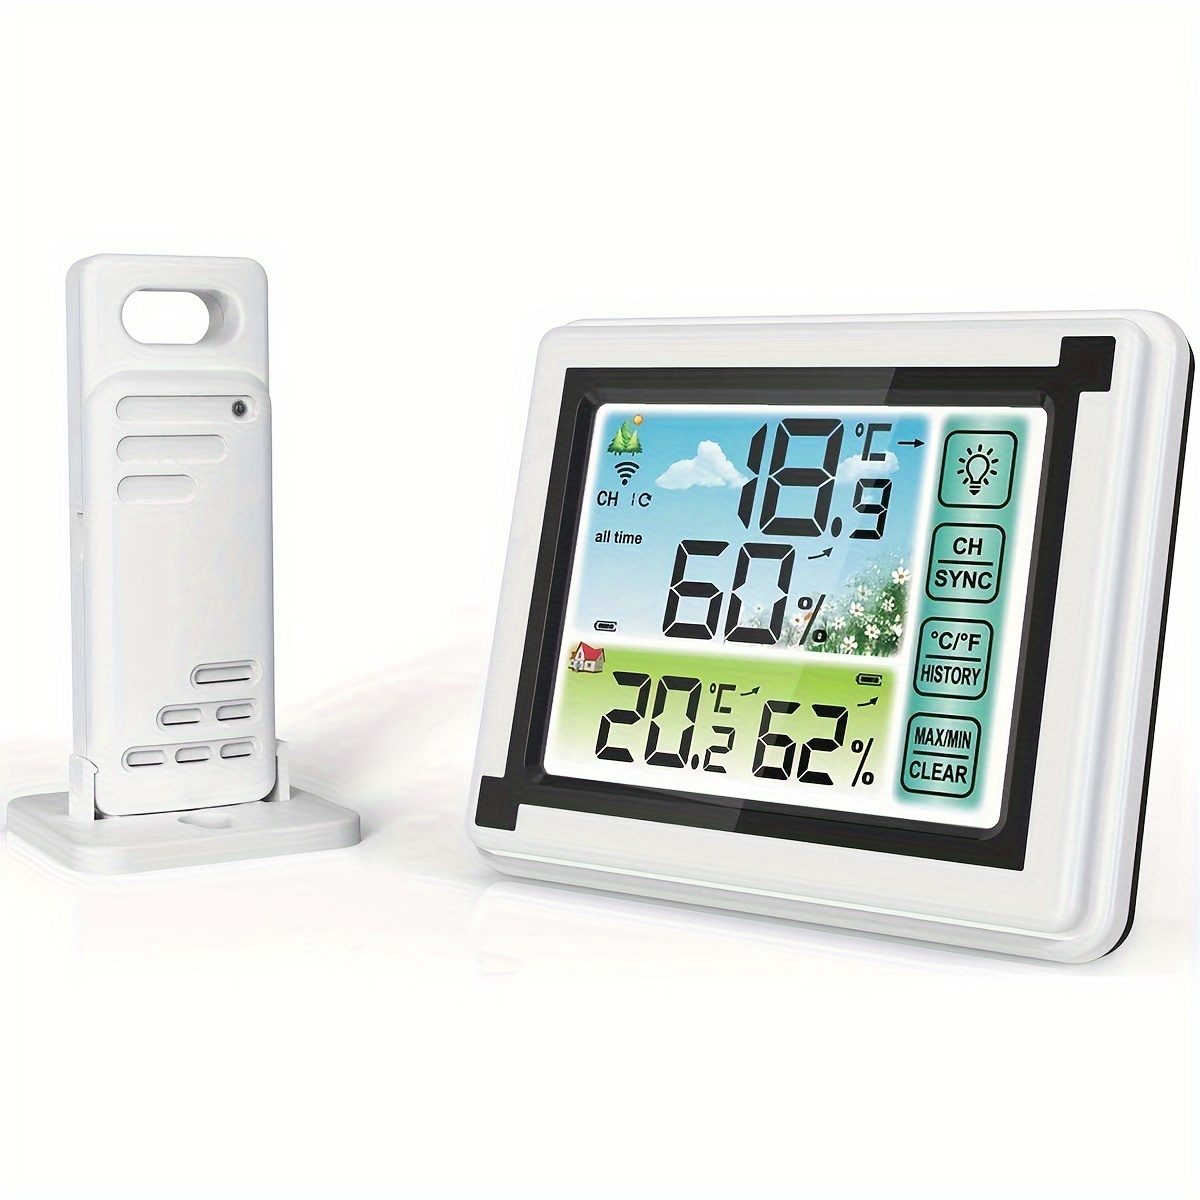 Tuya - Termometro intelligente igrometro, Bluetooth senza fili di  temperatura e umidità con display LCD, compatibile con Alexa e Google  Assistant, con funzione di allarme : : Giardino e giardinaggio